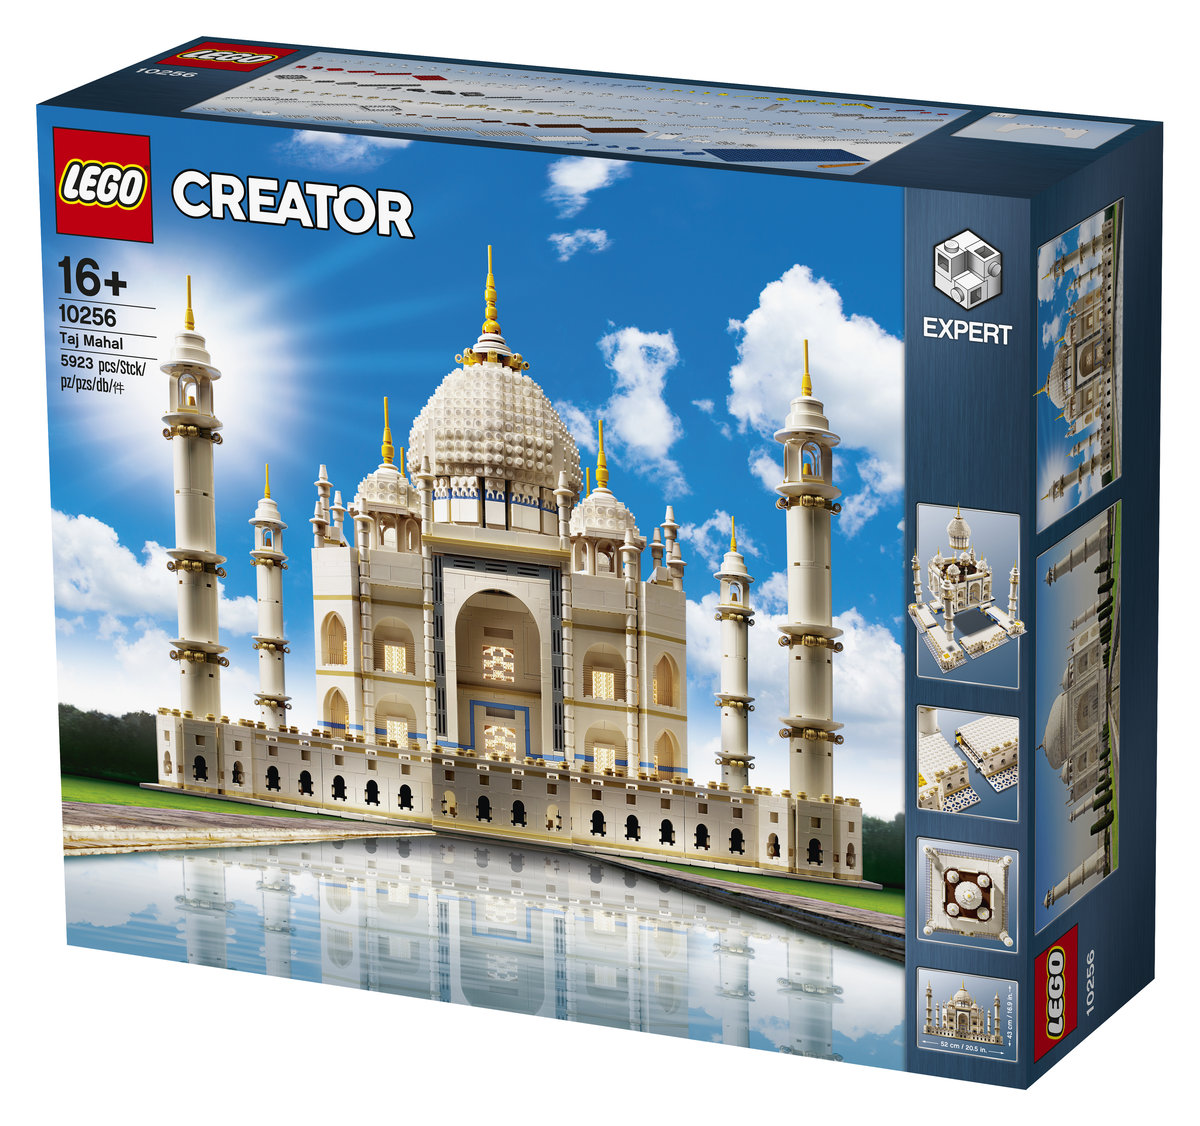 LEGO Creator Expert - Taj Mahal 10256